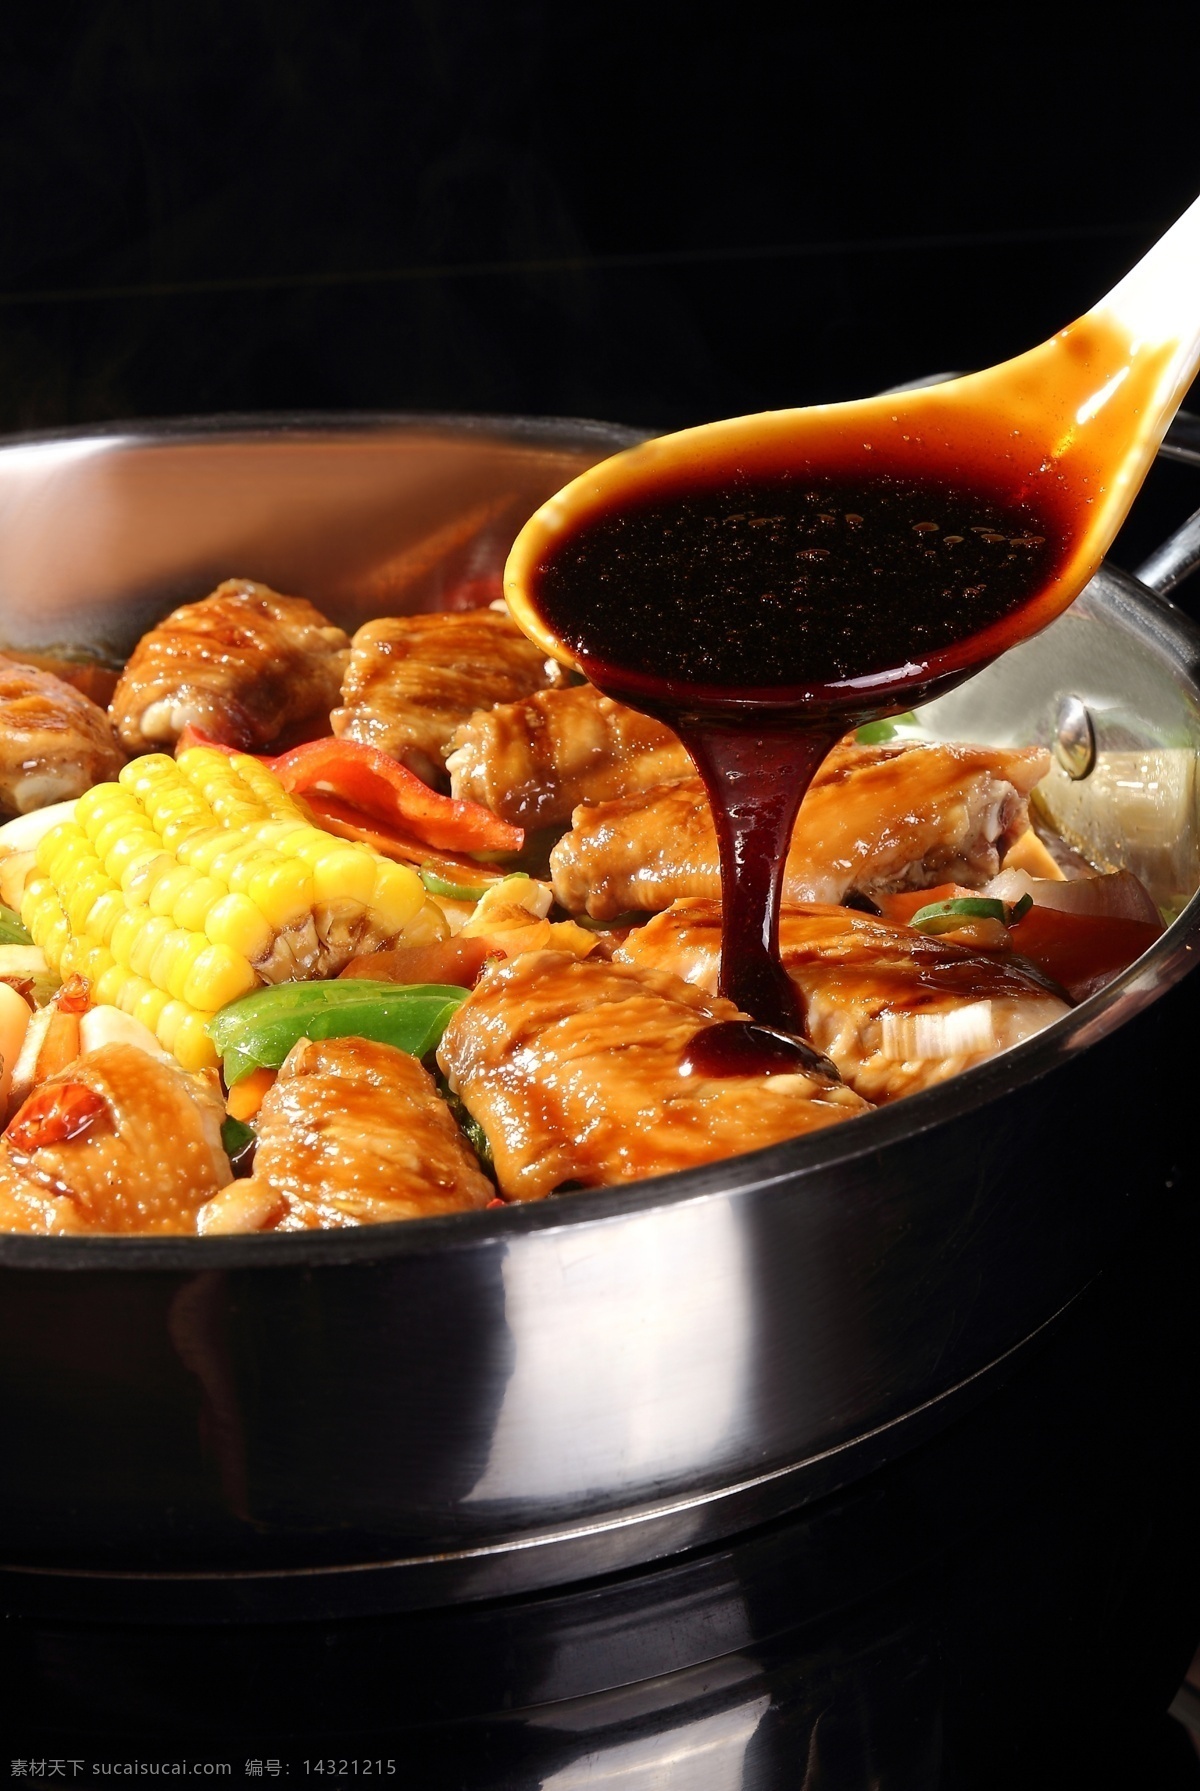 鸡翅焖锅 鸡翅 鸡翅锅 焖锅 焖锅菜品 餐饮美食 美食 传统美食